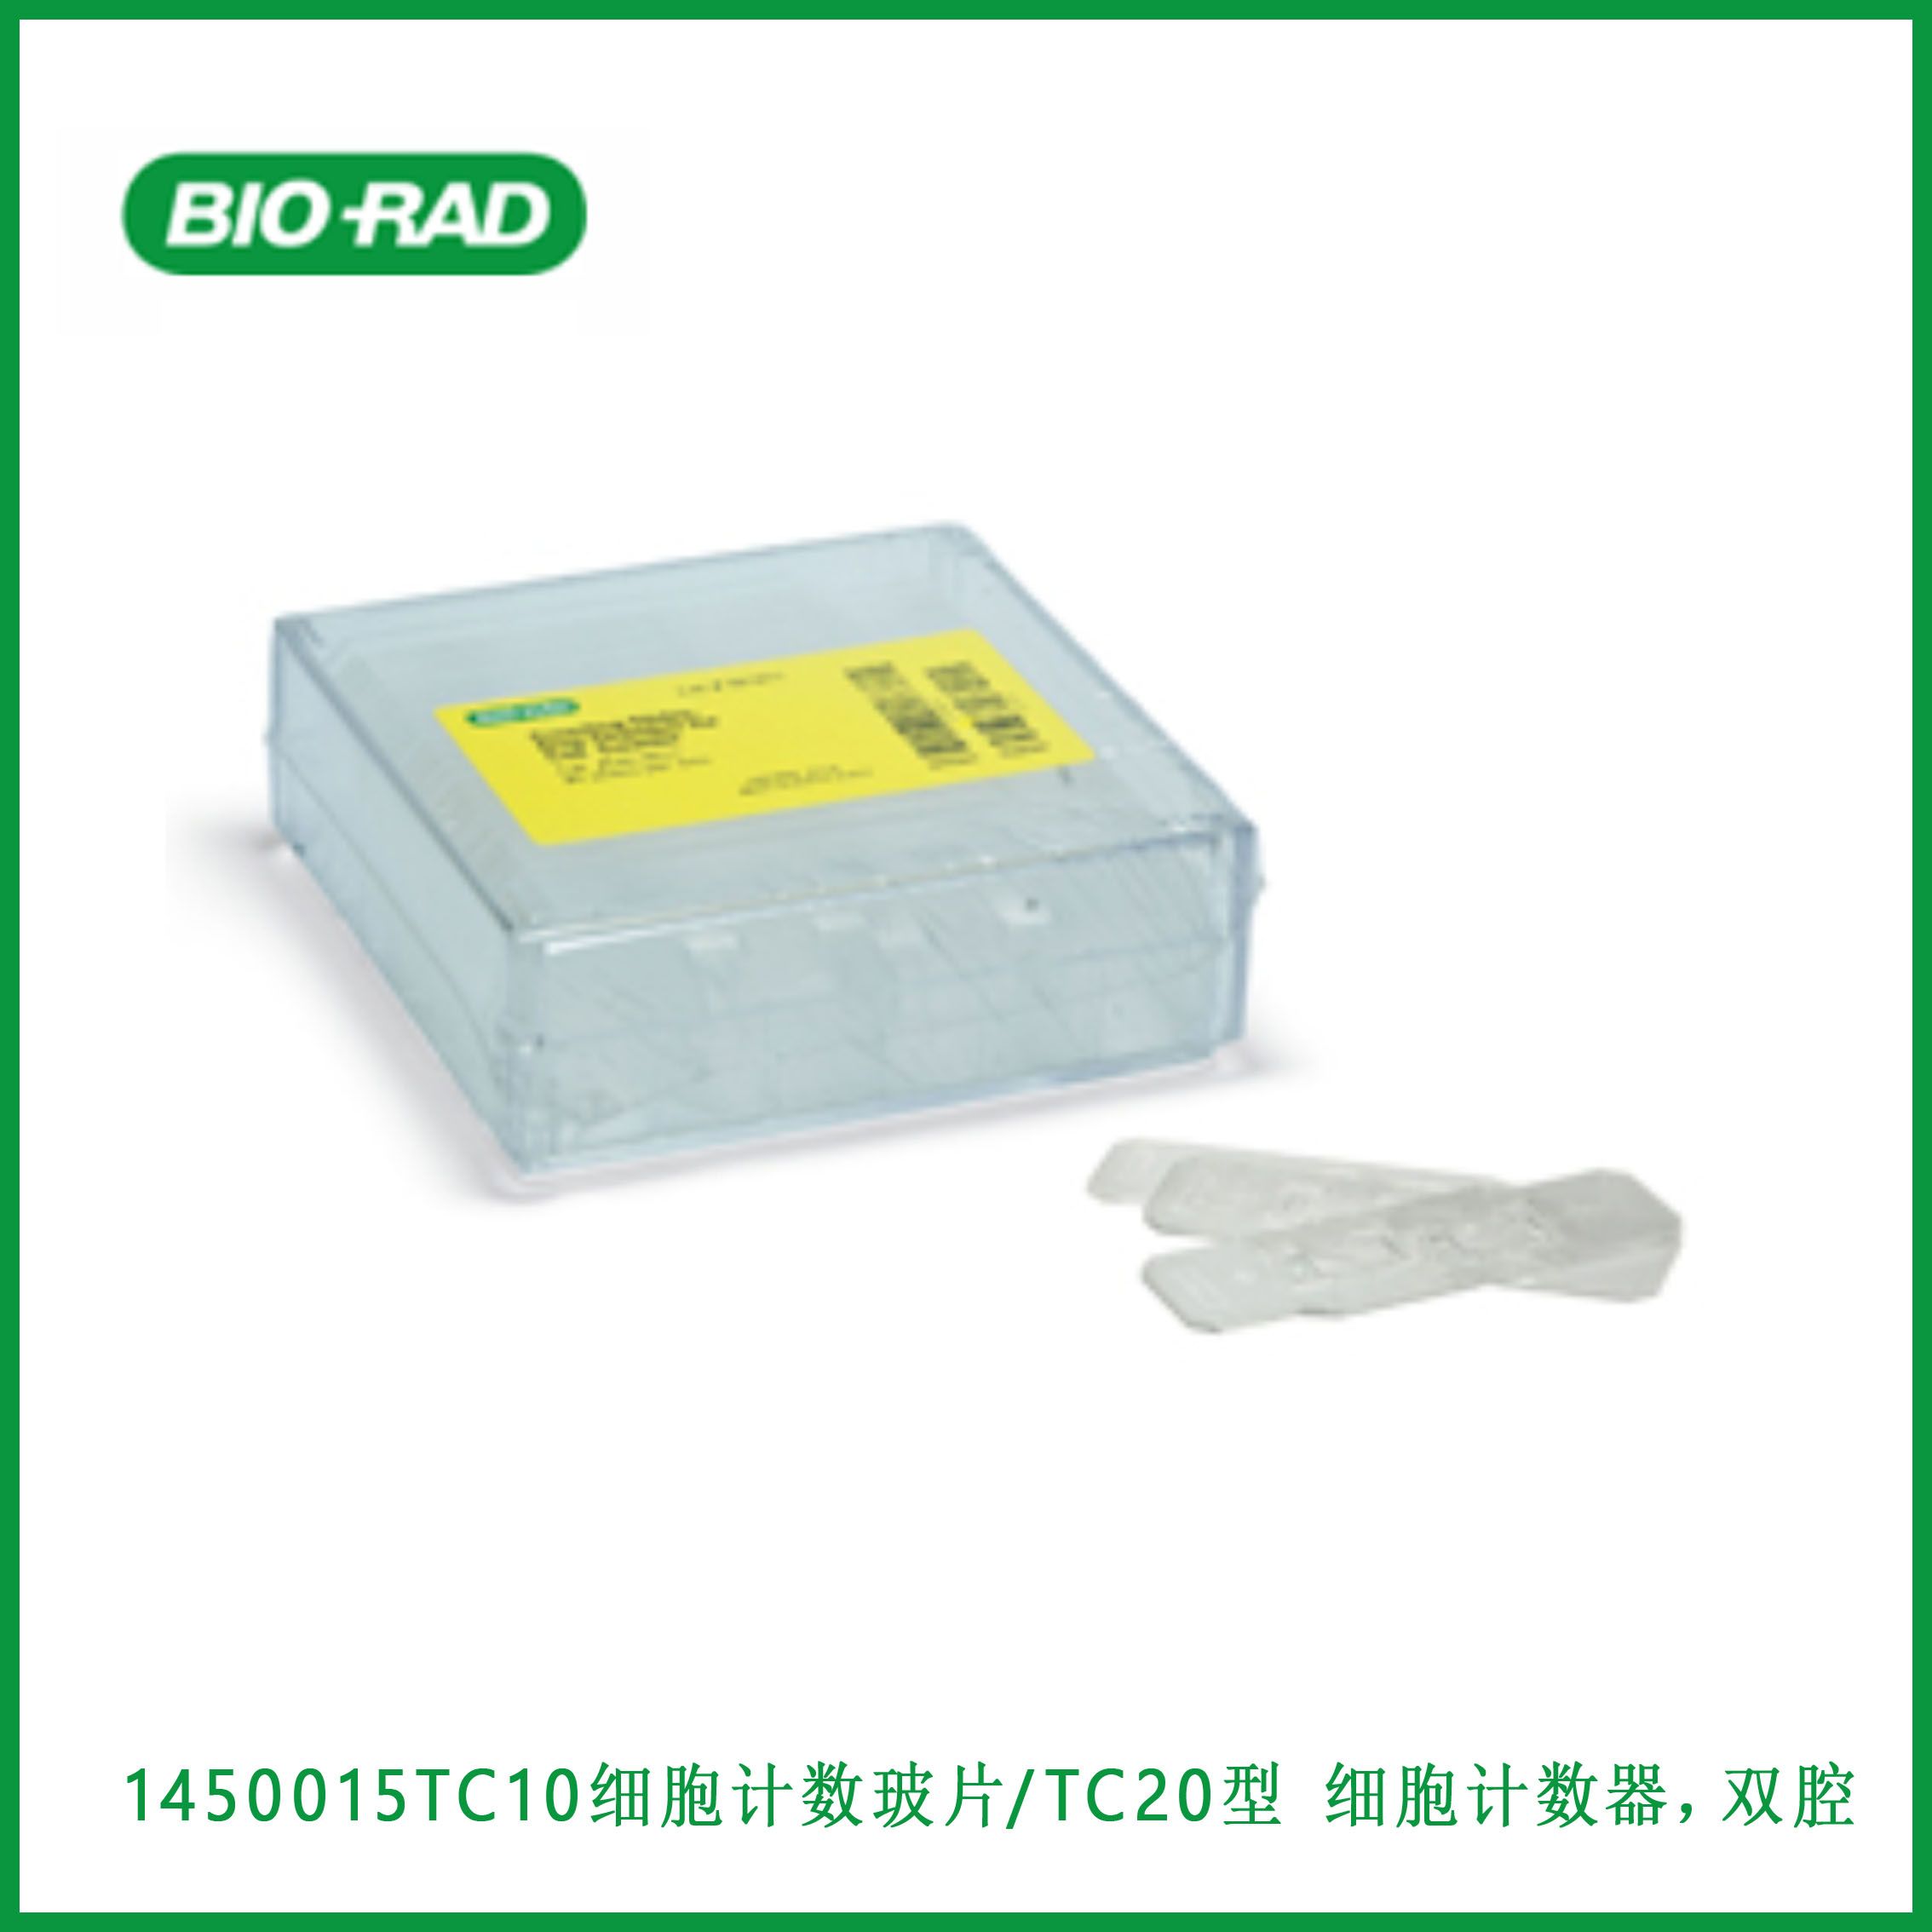 伯乐Bio-Rad 1450015Cell Counting Slides for TC10™/TC20™ Cell Counter, Dual-Chamber,TC10细胞计数玻片™/TC20型™ 细胞计数器，双腔